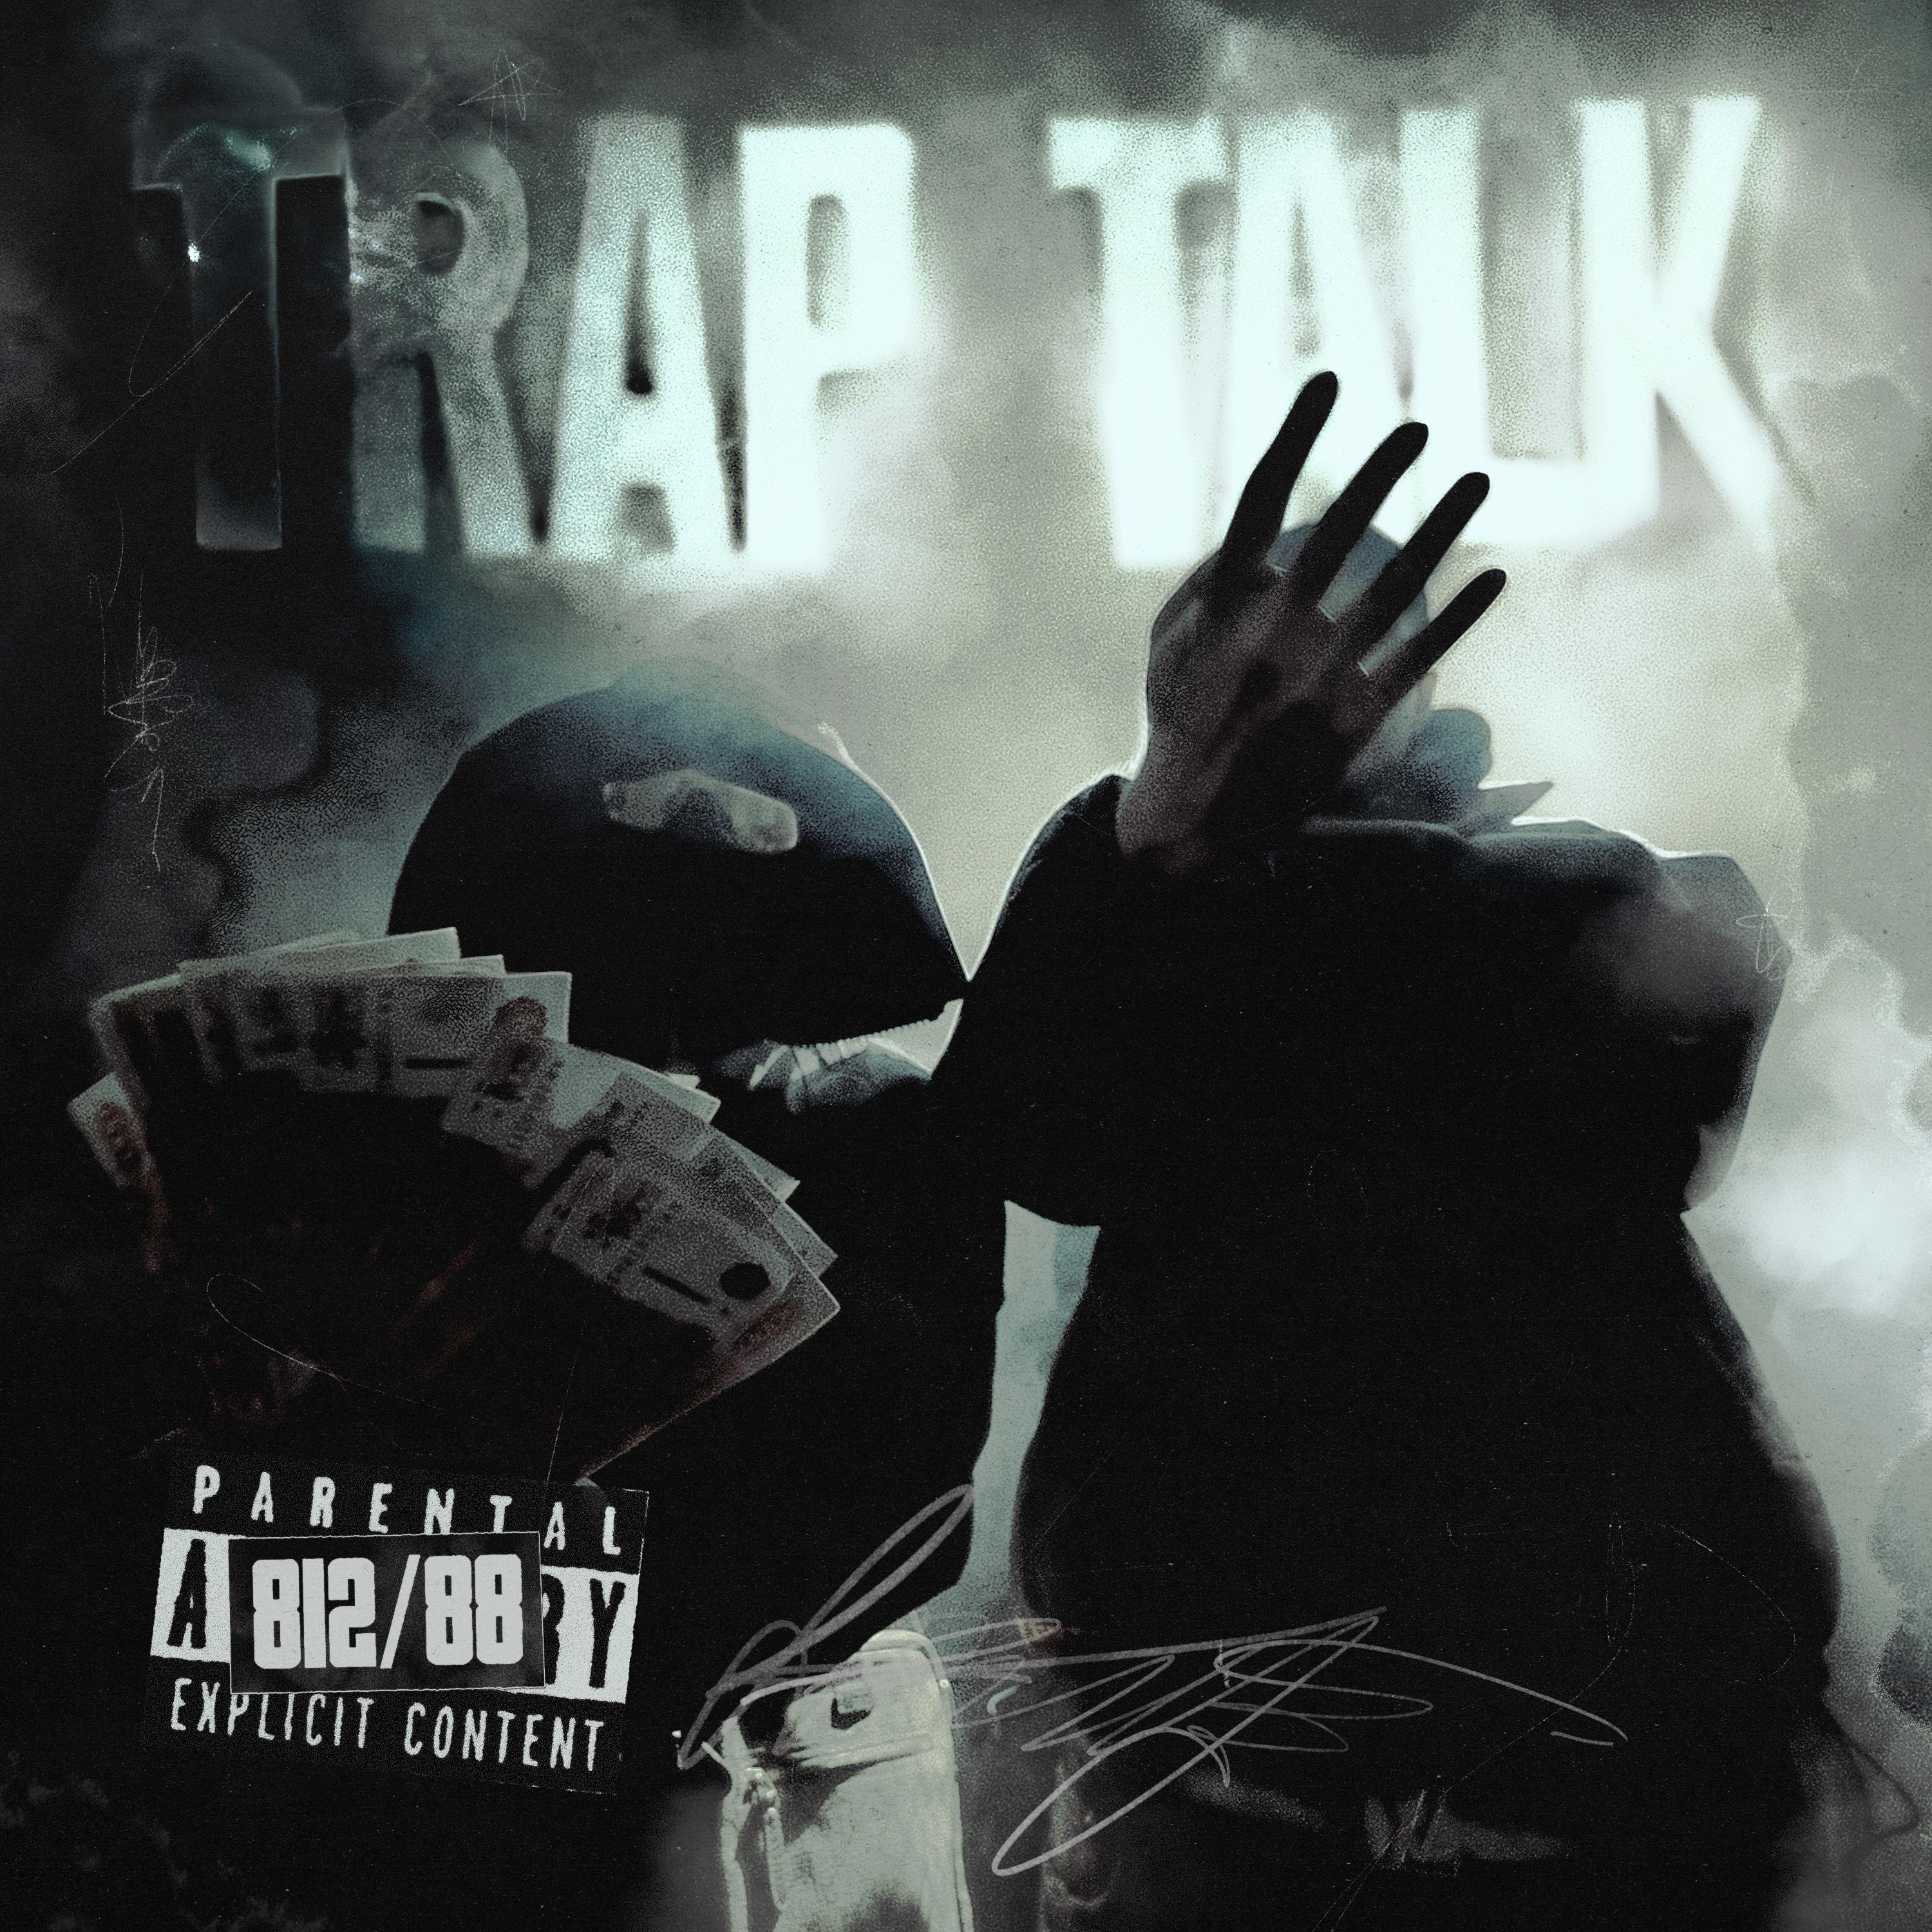 Постер альбома Trap Talk